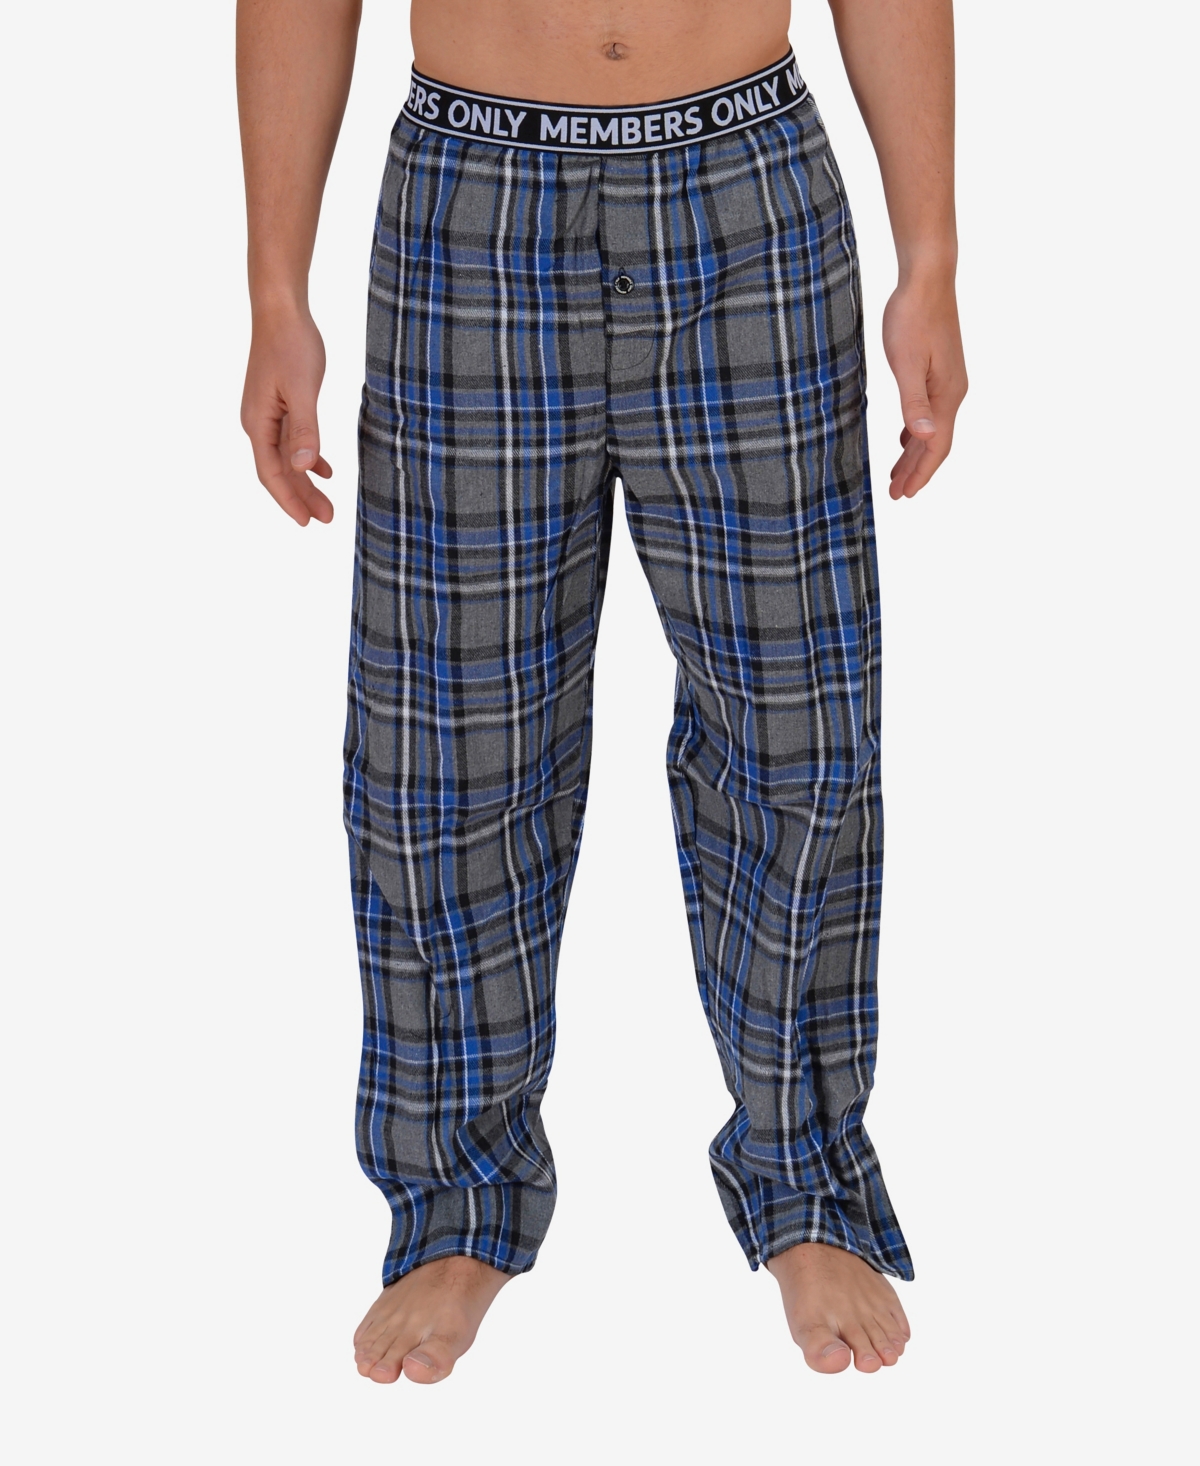 Men's Flannel Lounge Pants - Gray, Blue Plaid